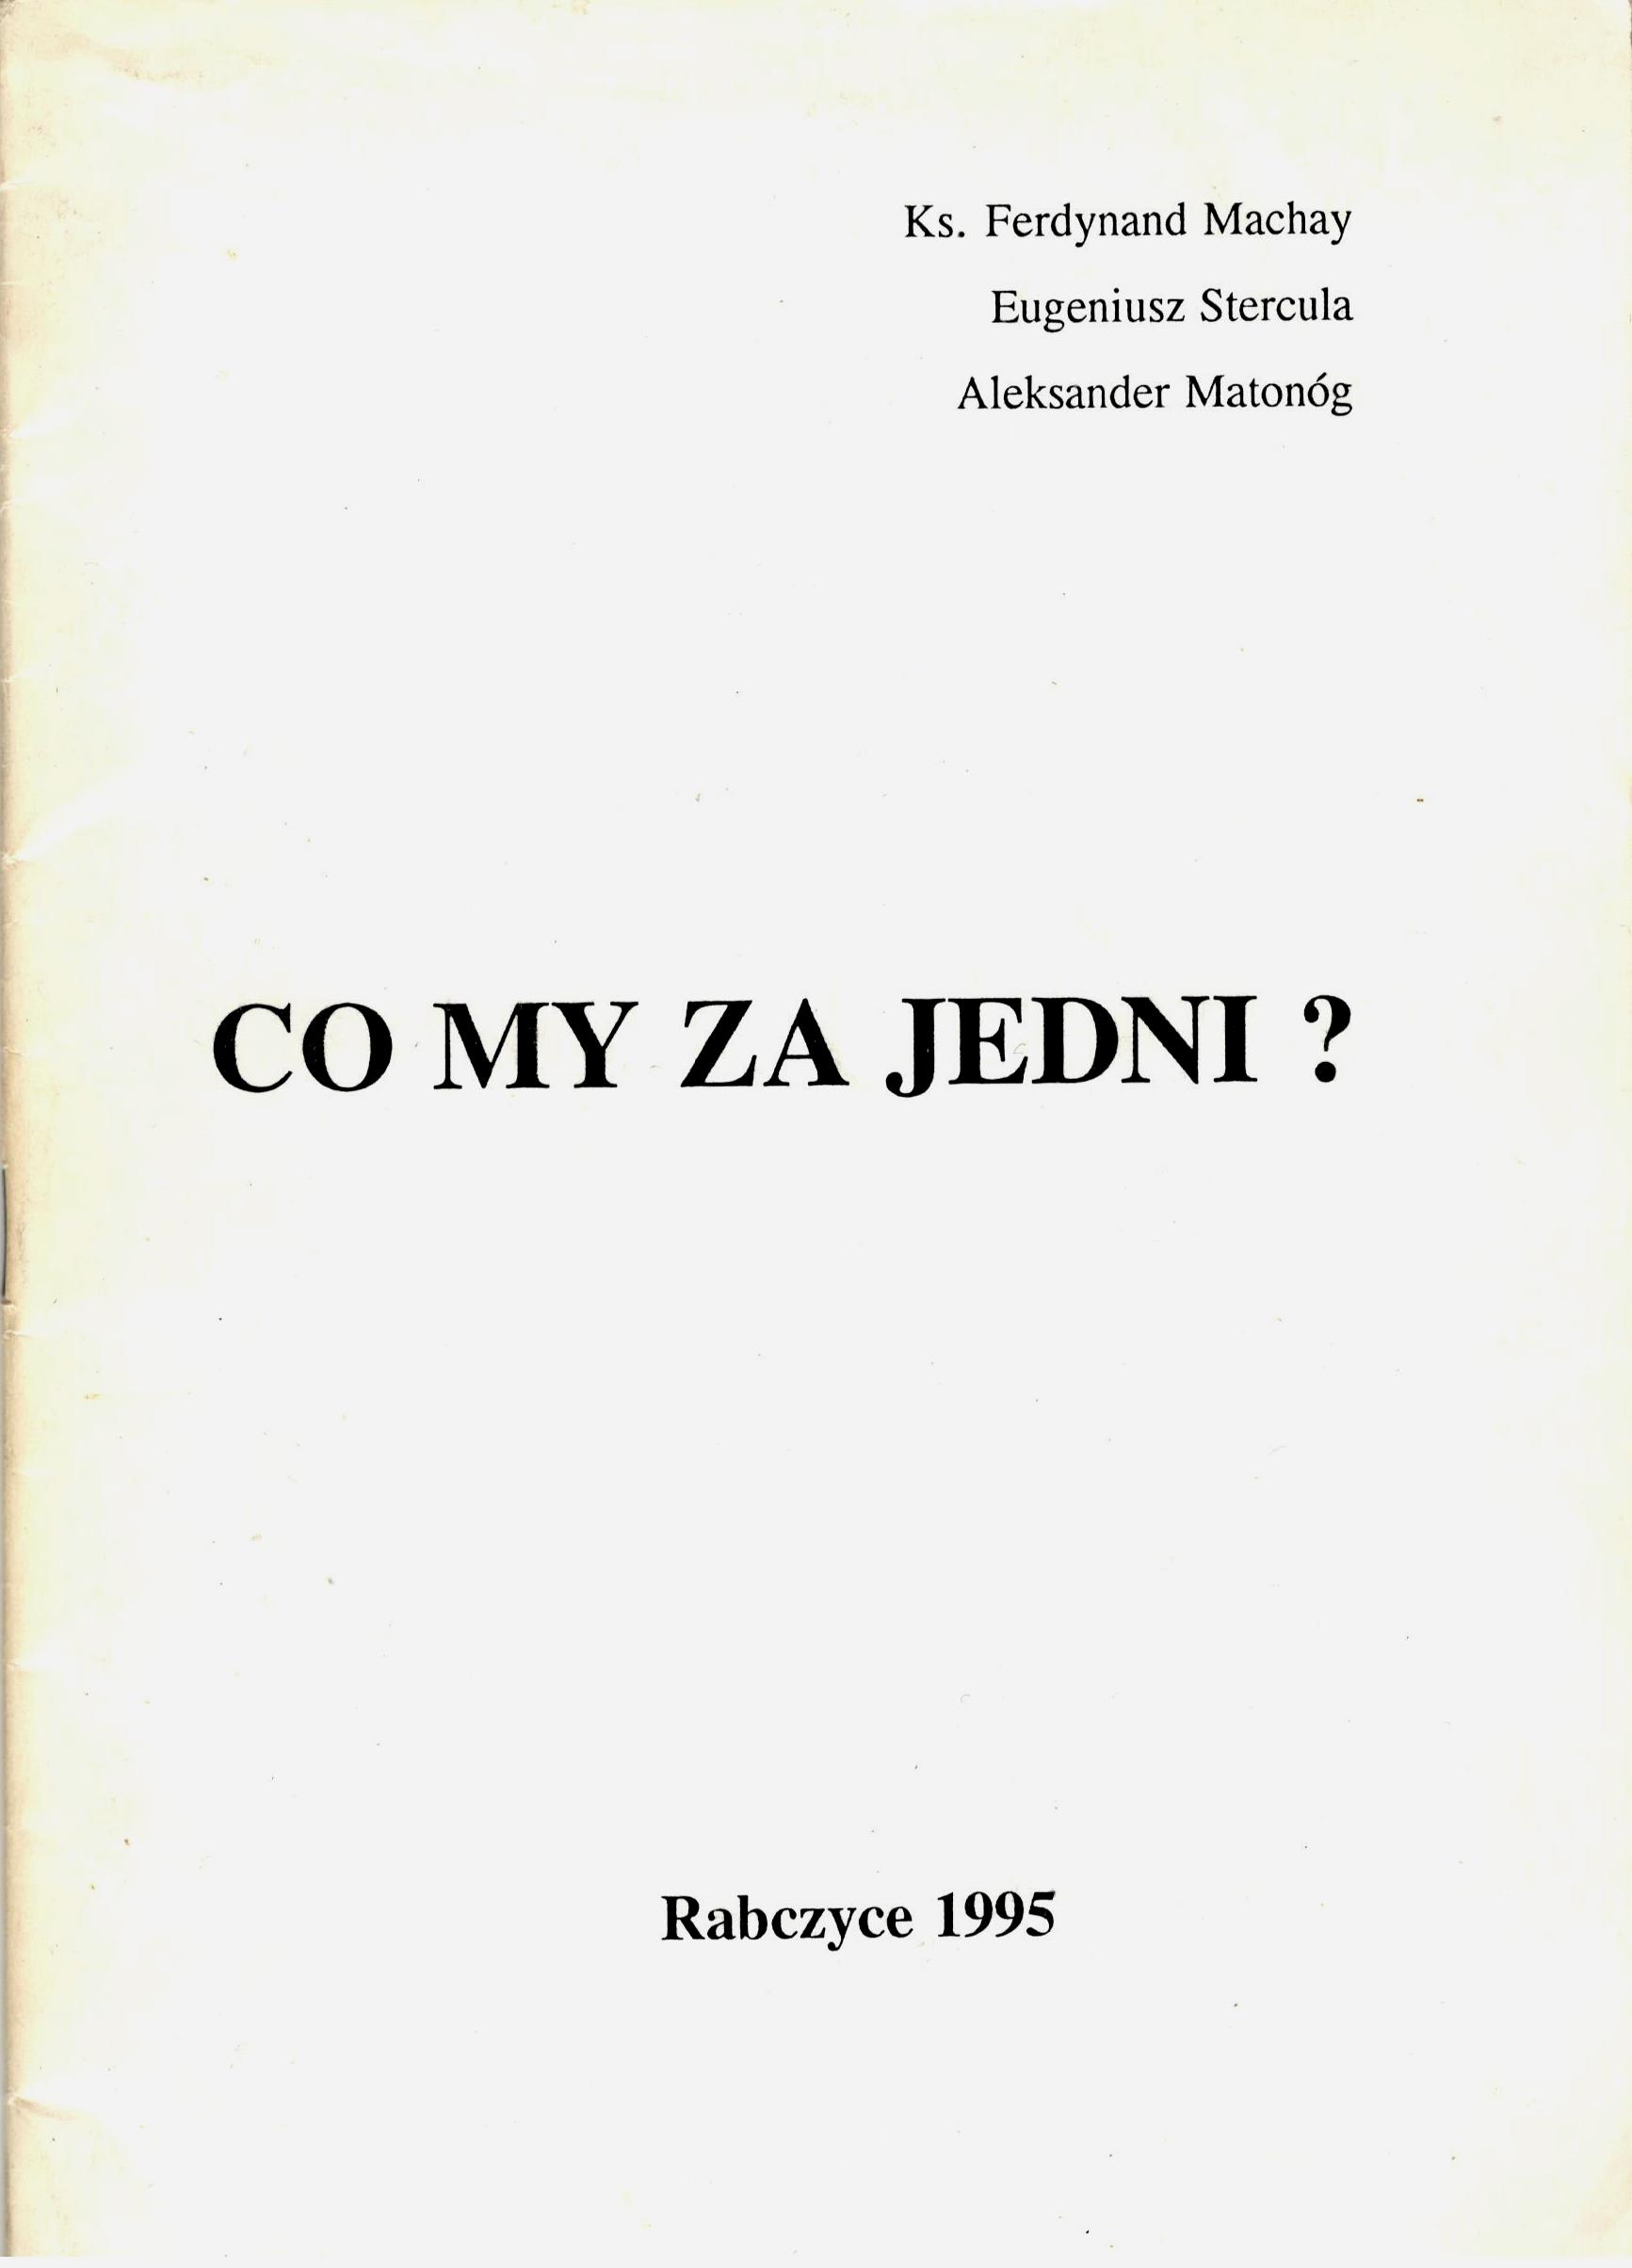 Co my za jedni okładka Rabczyce 1995